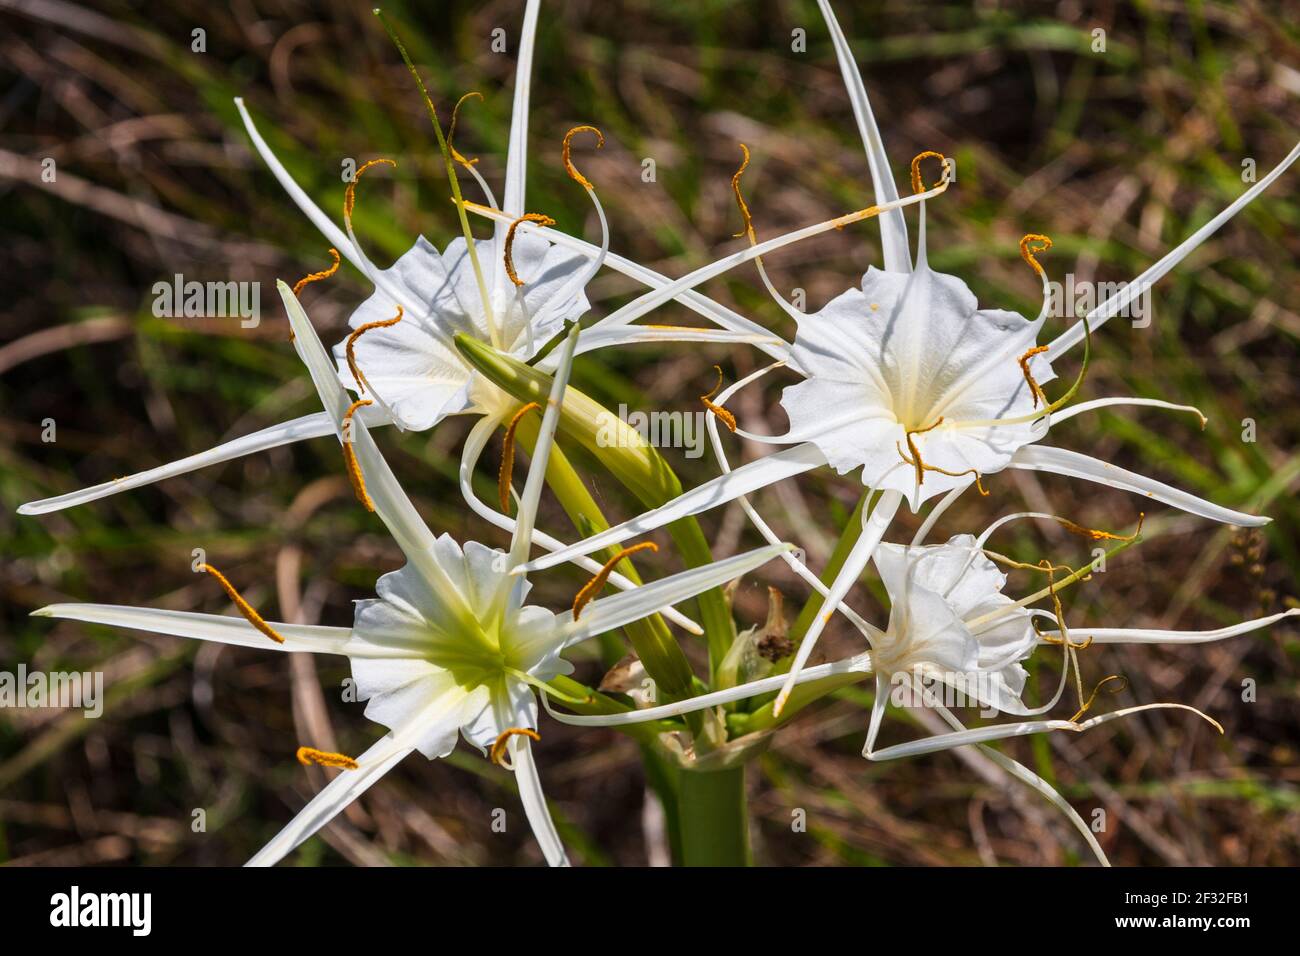 Spider Lily, Hymenocallis liriosme, wild wachsend am Straßenrand und in nahe gelegenen Feldern, entlang Texas Highway 382 in der Nähe von Whitehall, Texas. Stockfoto